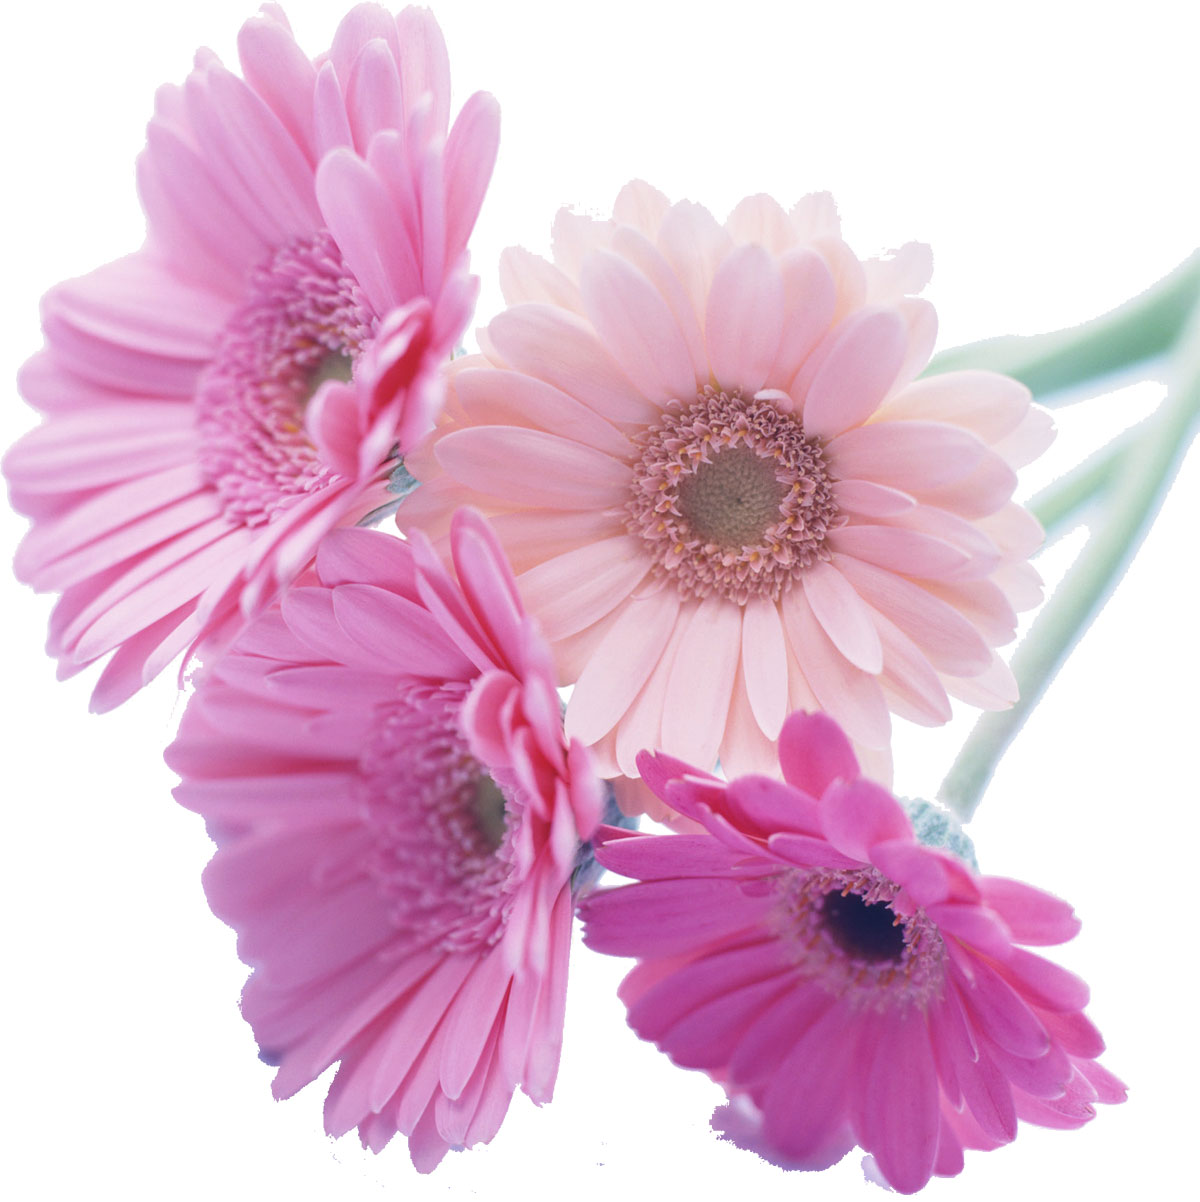 ピンクの花の写真 フリー素材 No 474 ガーベラ ピンク